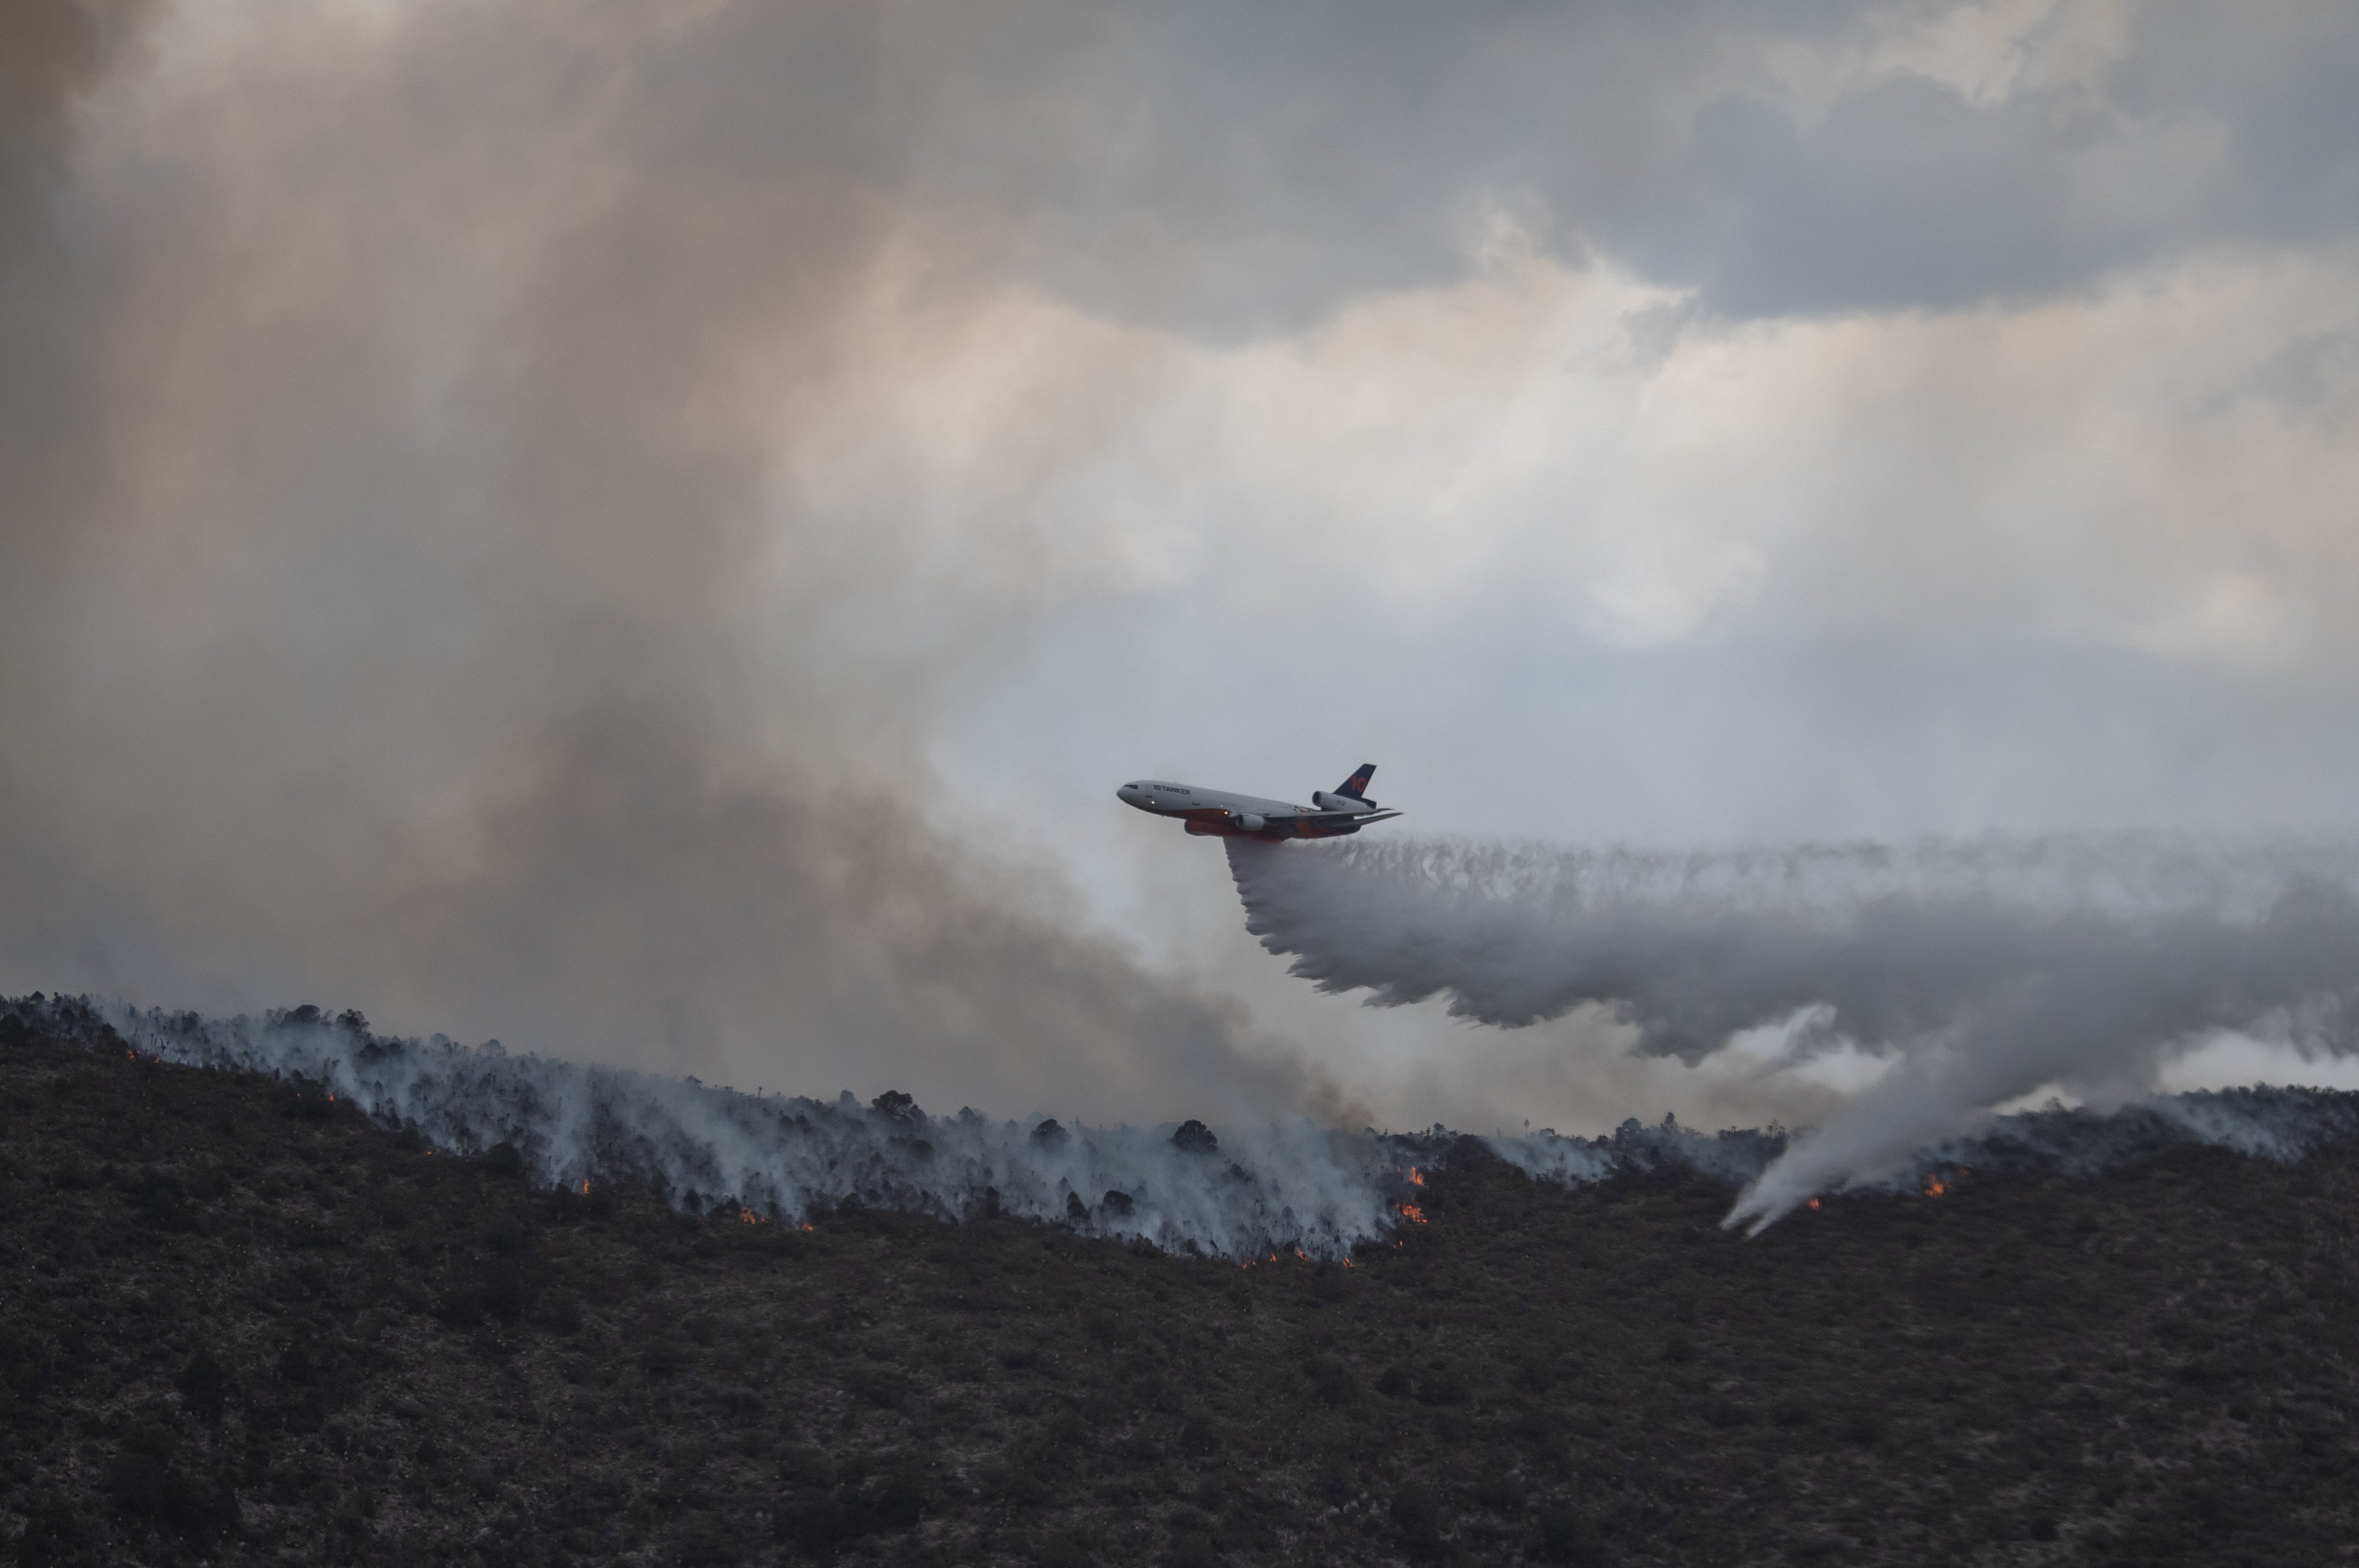 Espanya ja té un satèl·lit que vigila els incendis forestals des de l'espai